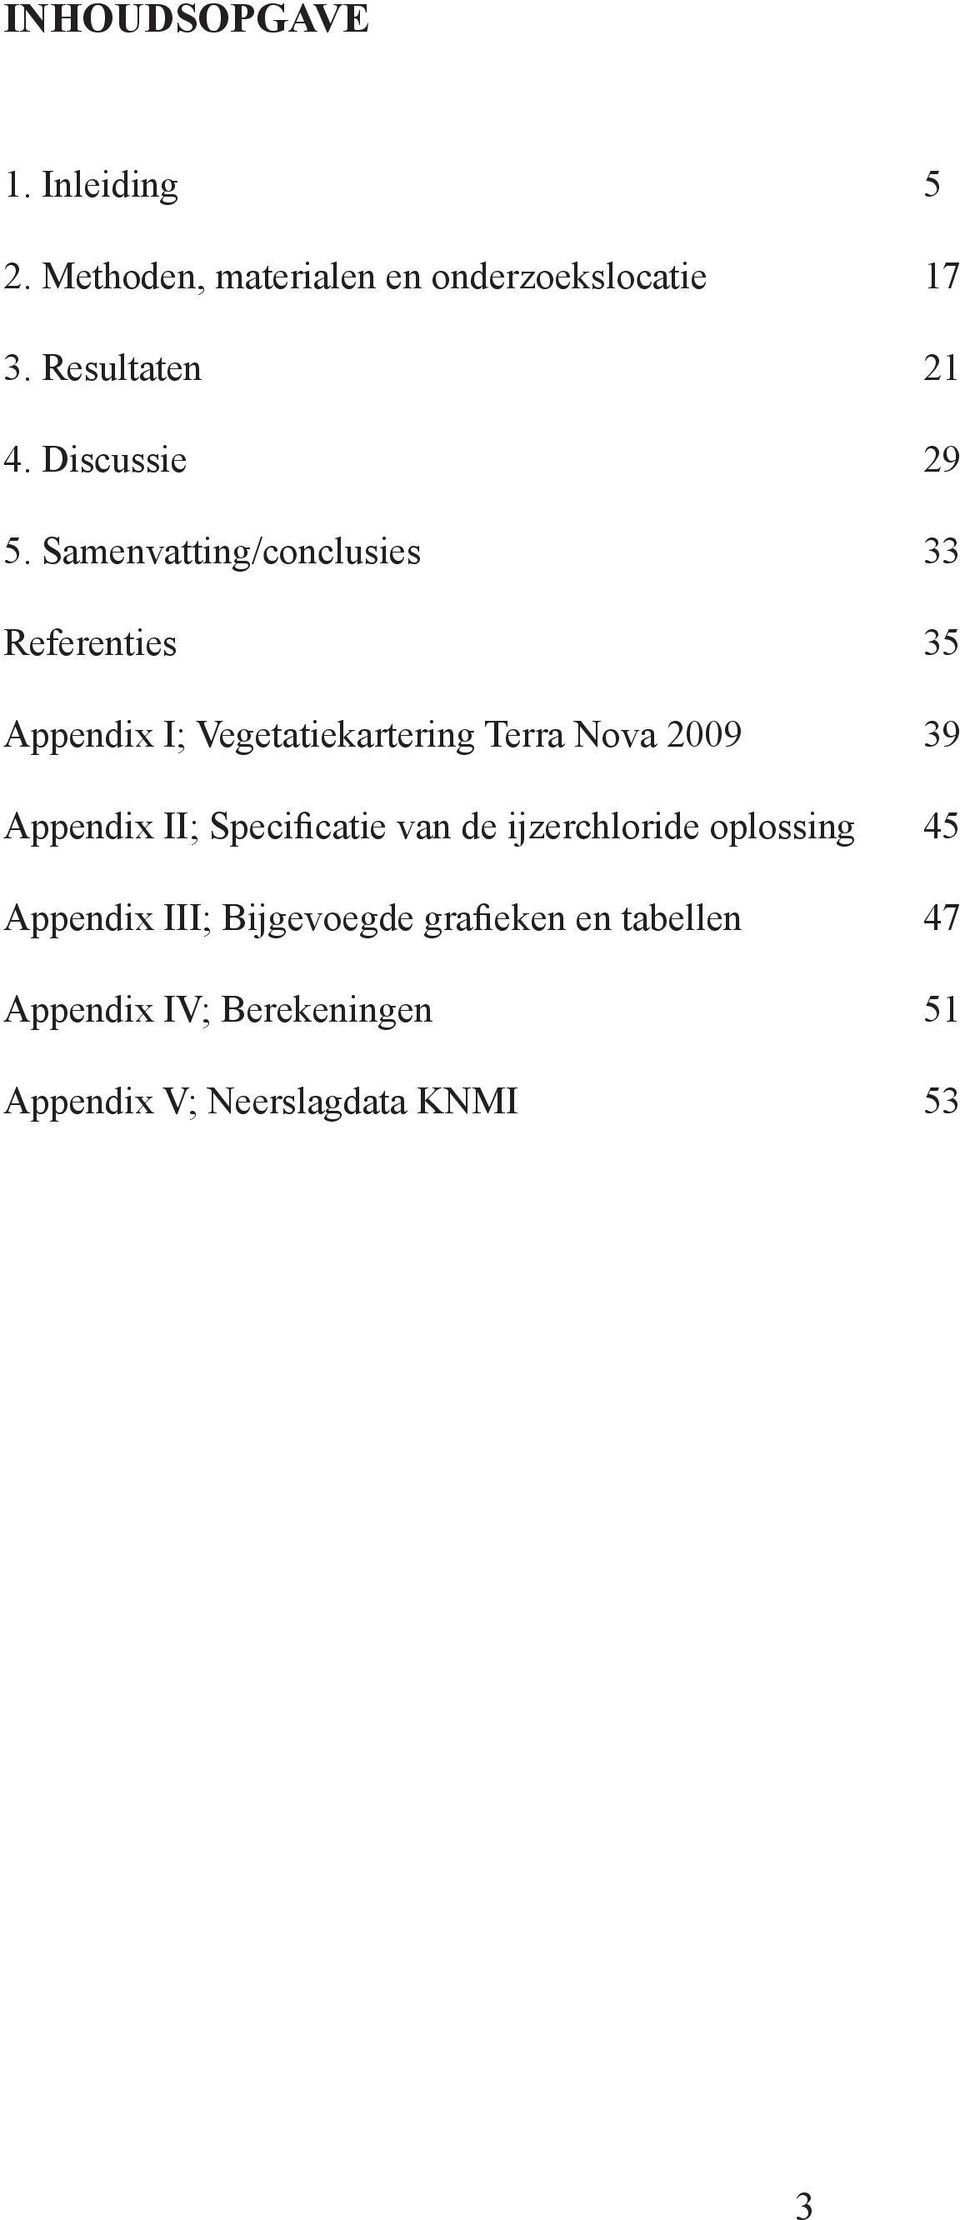 Samenvatting/conclusies Referenties Appendix I; Vegetatiekartering Terra Nova 2009 Appendix